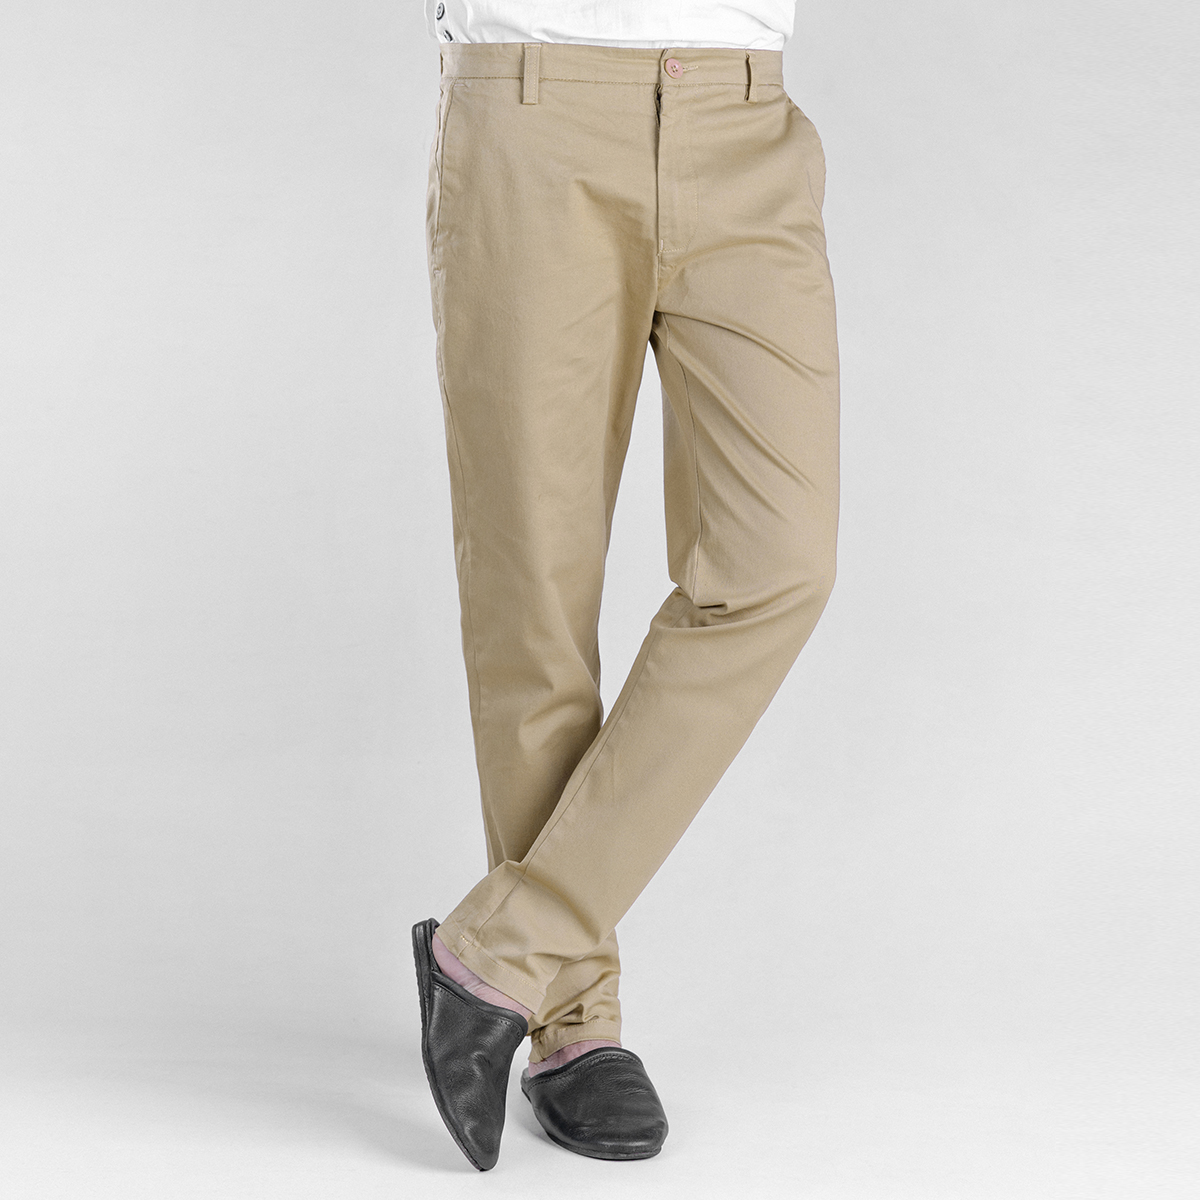 Cotton Pant for Man - Light Khaki